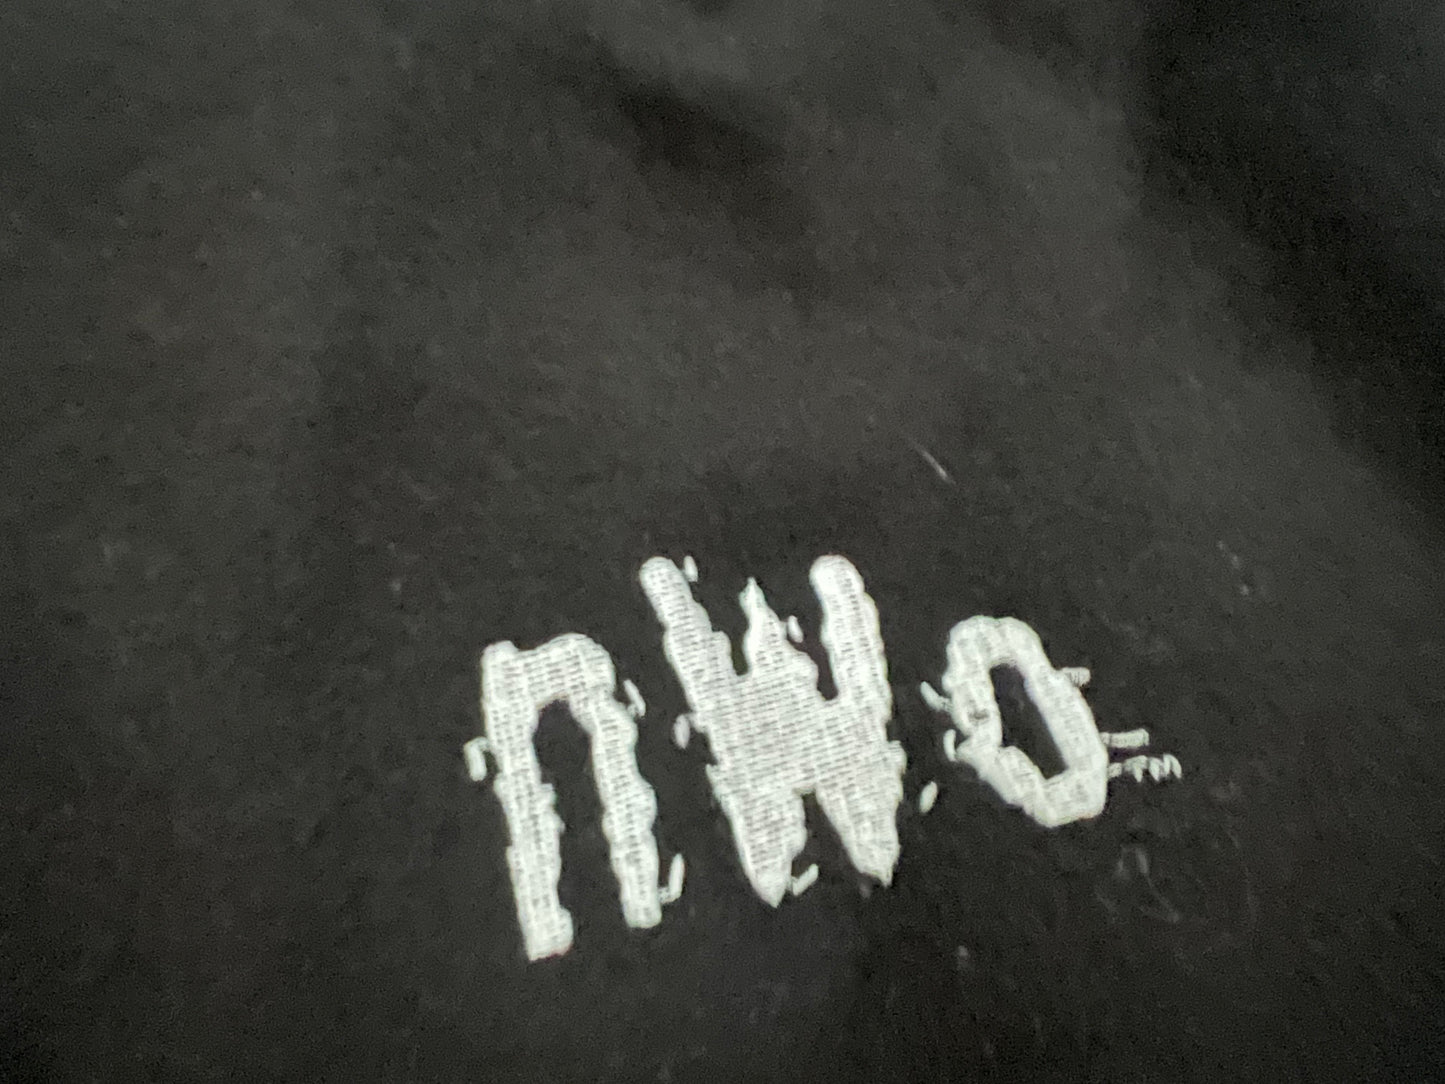 1997 WCW / n.W.o. New World Order Logo Letterman Jacket